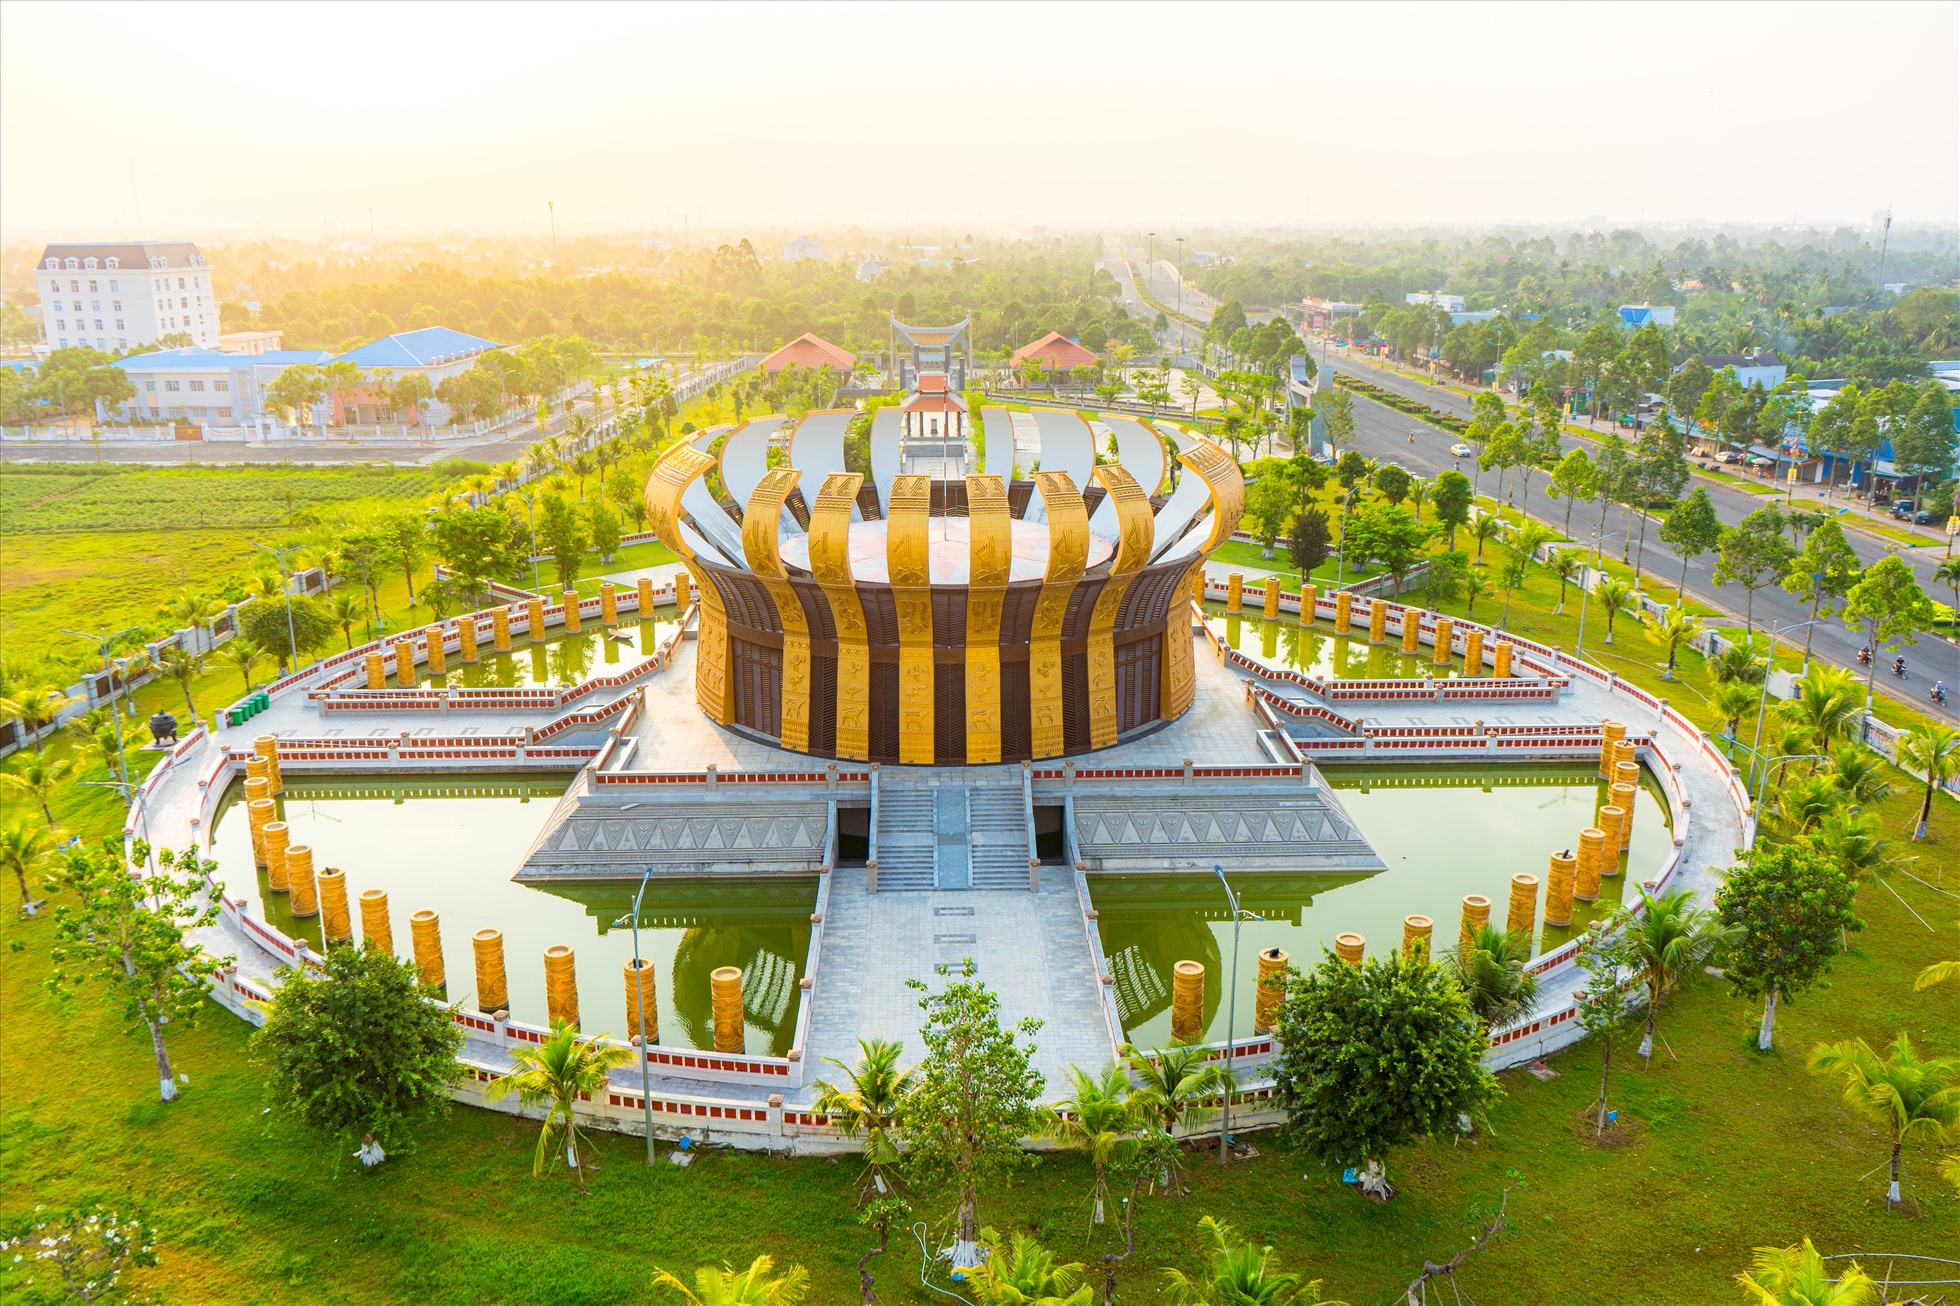 Đền thờ Vua Hùng - công trình văn hóa trọng điểm, có ý nghĩa lịch sử quan trọng của TP. Cần Thơ và quốc gia được khởi công xây dựng năm 2019, khánh thành vào tháng 4.2022. Tổng mức đầu tư hơn 129 tỉ đồng, với diện tích rộng hơn 39.000m2.